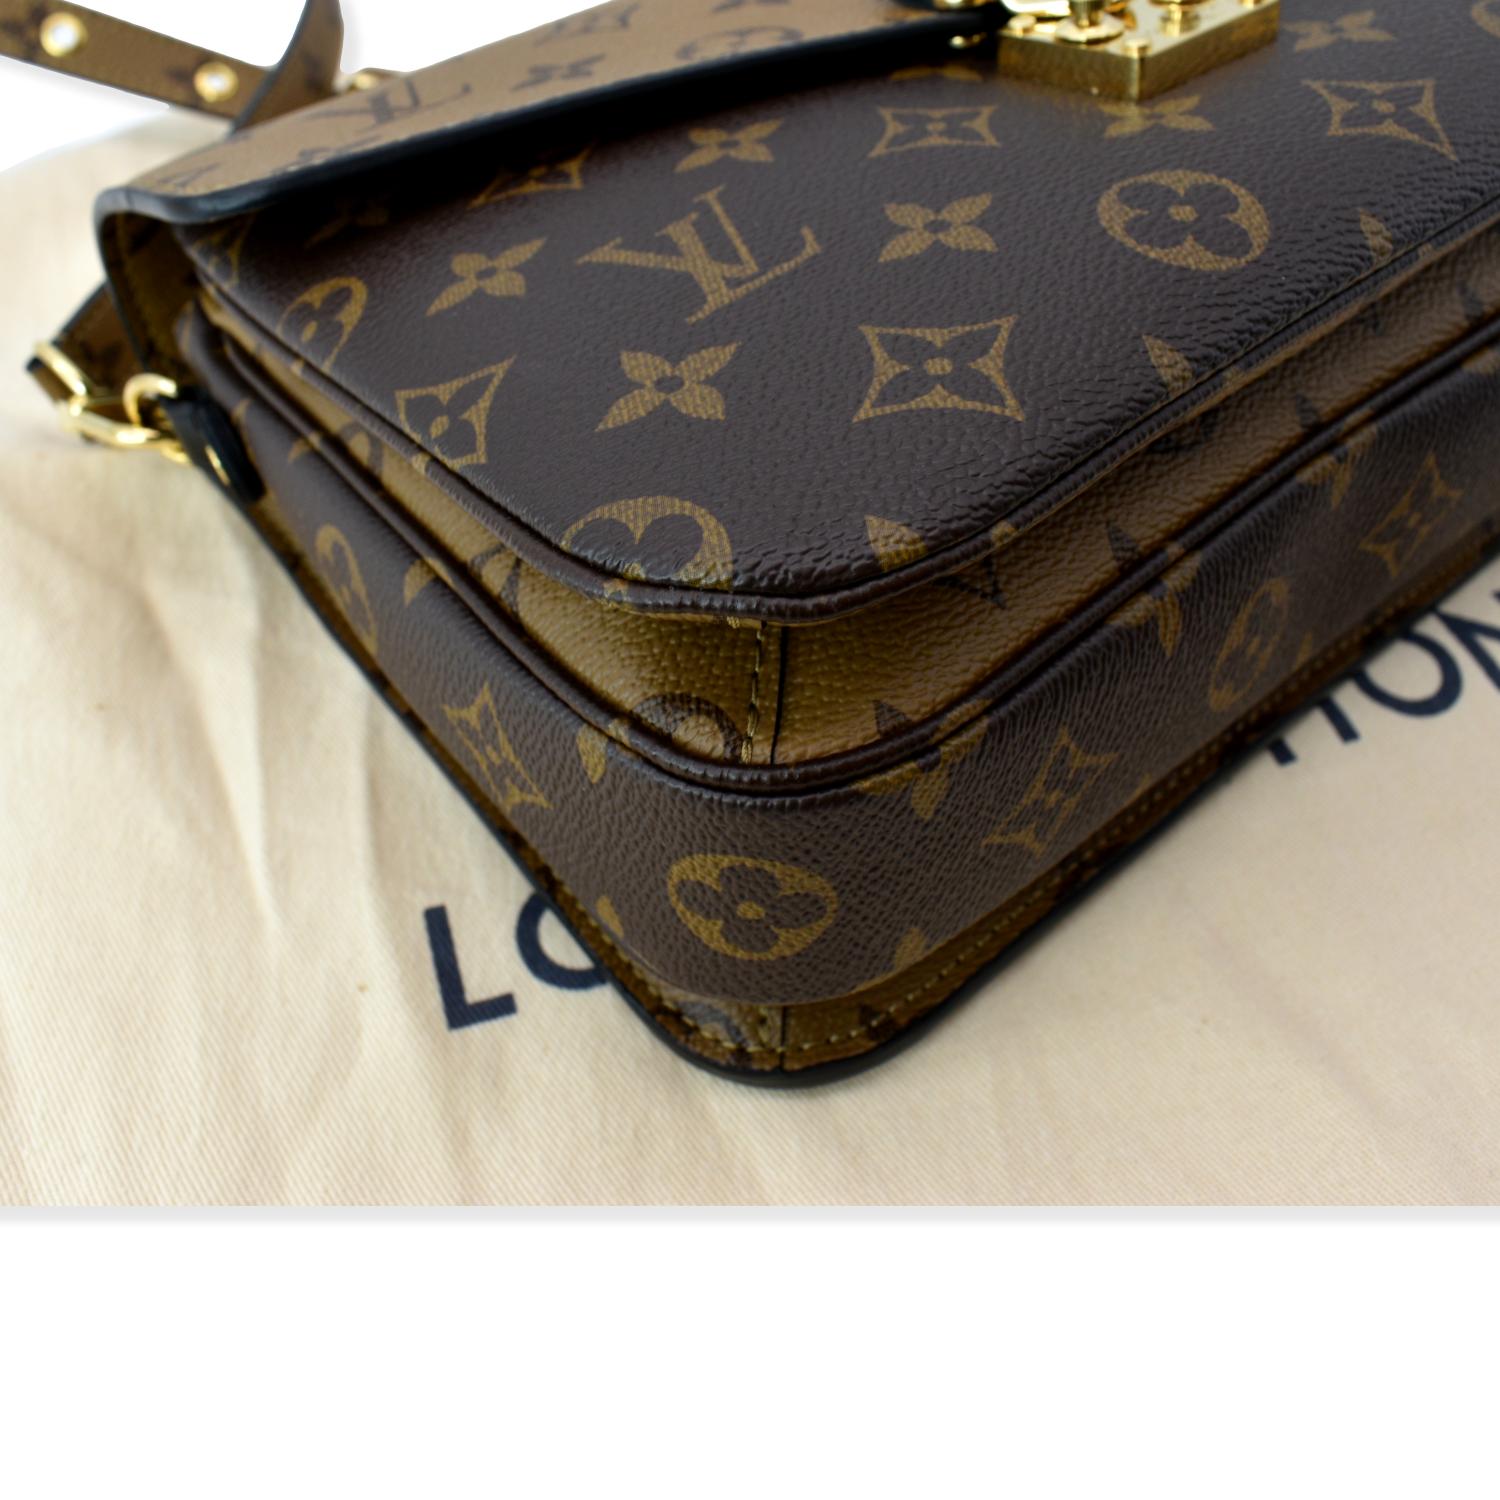 Louis Vuitton Reversed Monogram Pochette Metis Bag, Bragmybag